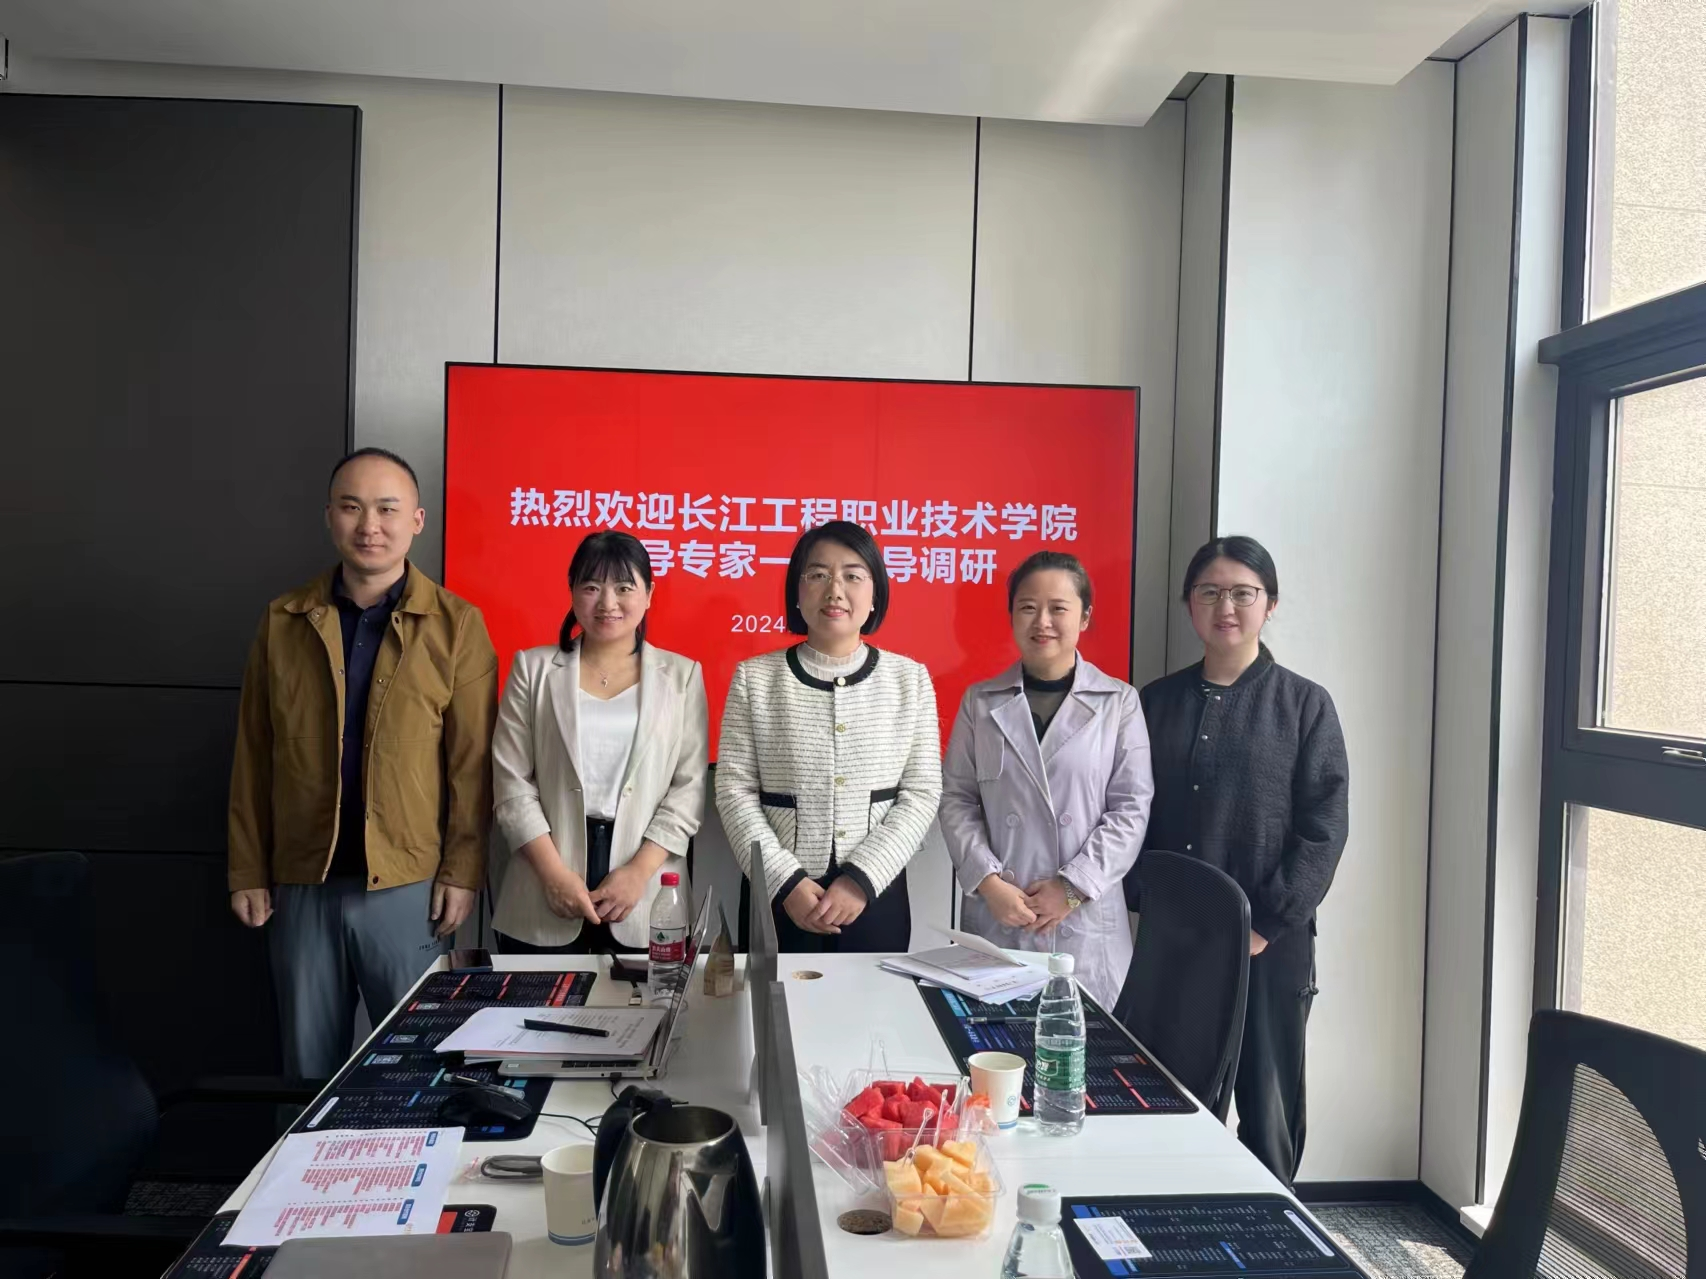 长江工程职业技术学院领导到访计支宝湖北分公司开展交流调研